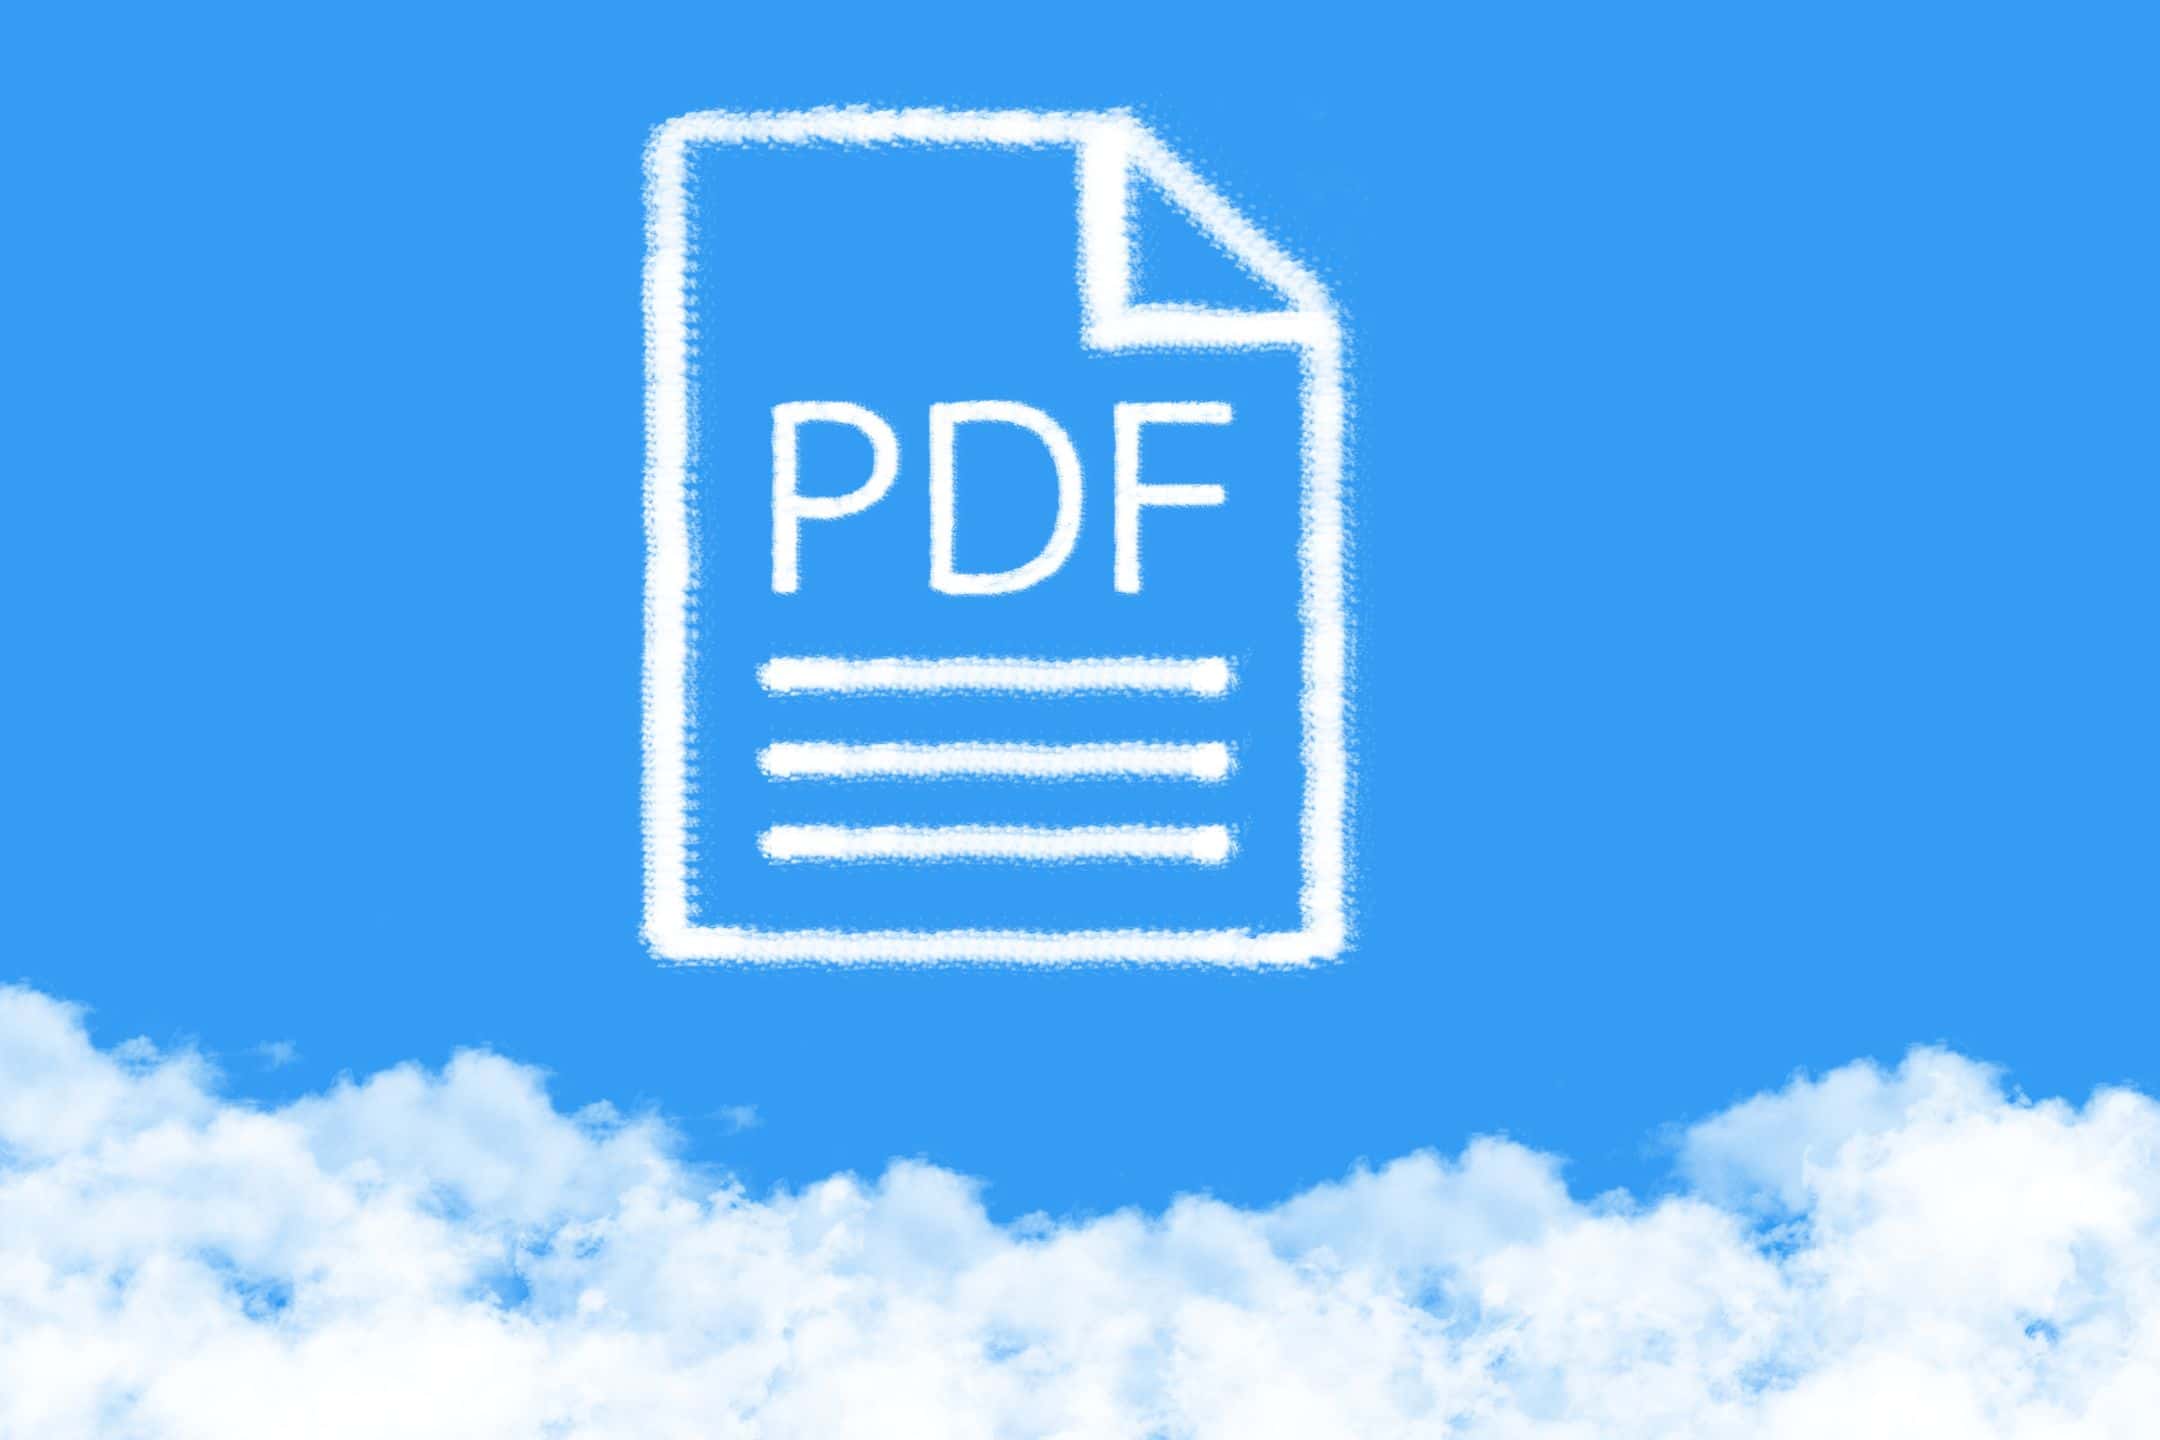 pdf datei illustration auf wolken im blauen himmel